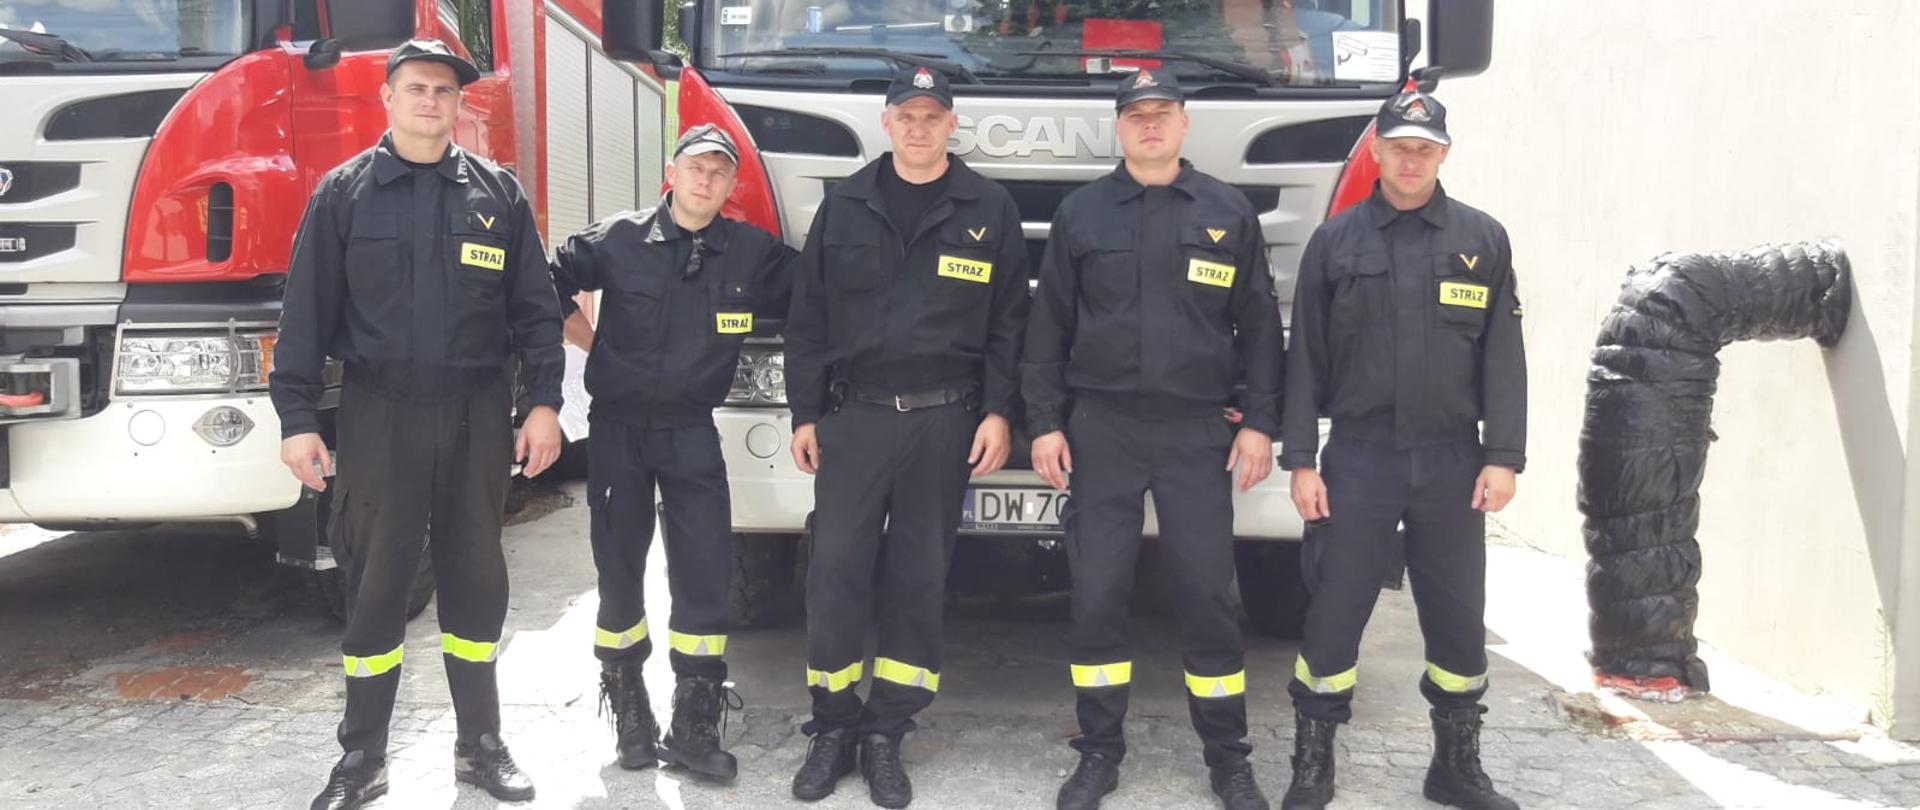 na tle pojazdu strażackiego stoi pięciu strażaków w mundurach 